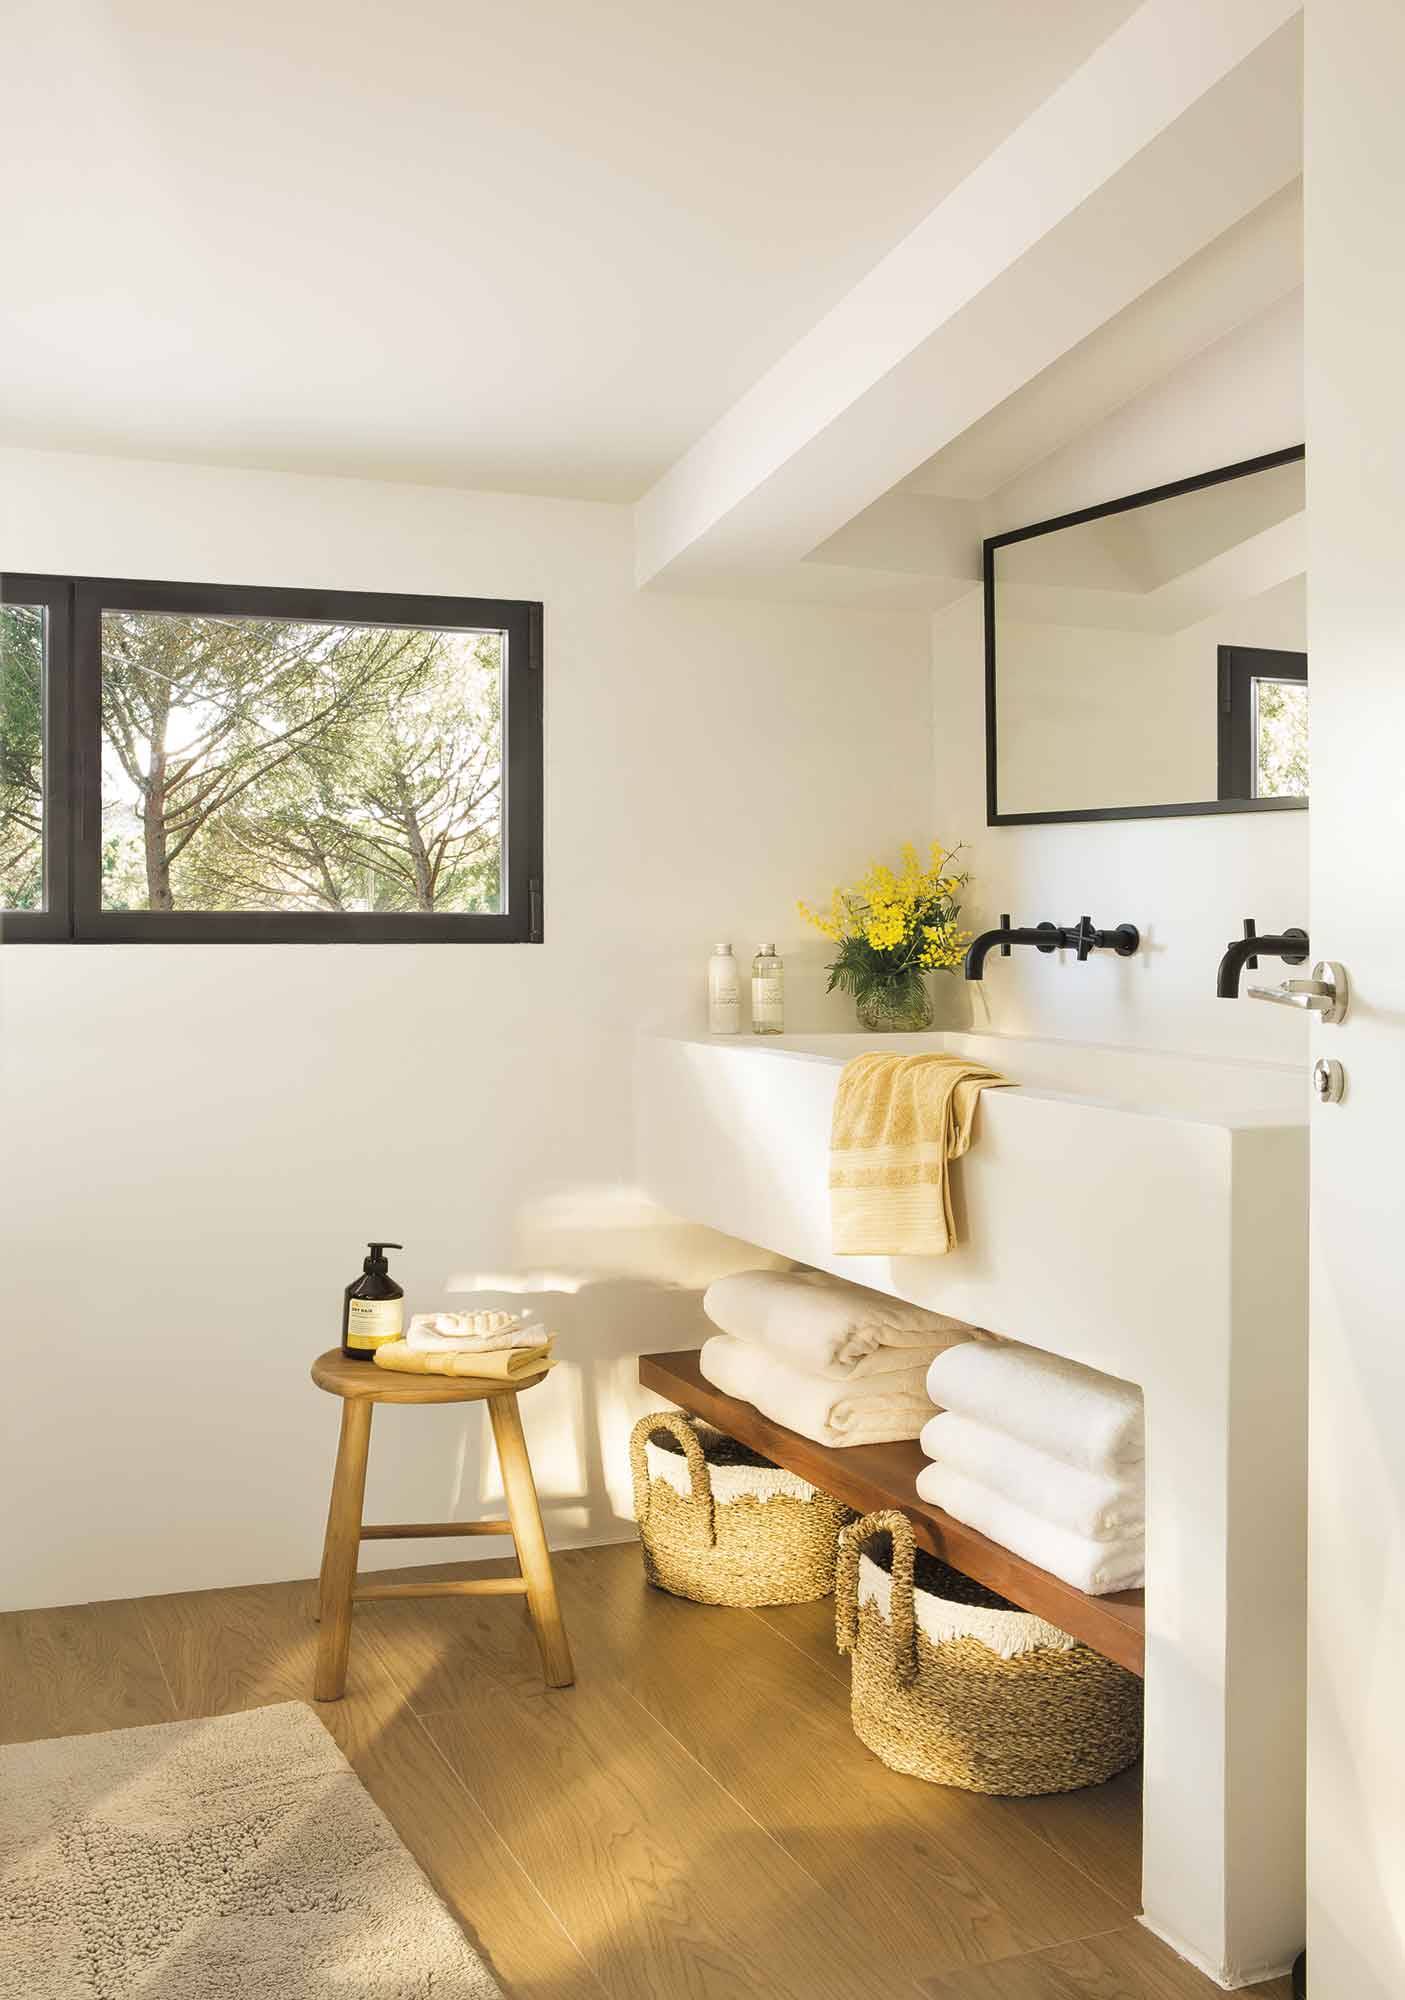 Baño moderno con muebles a medida, estante de madera y grifería y espejo en negro.